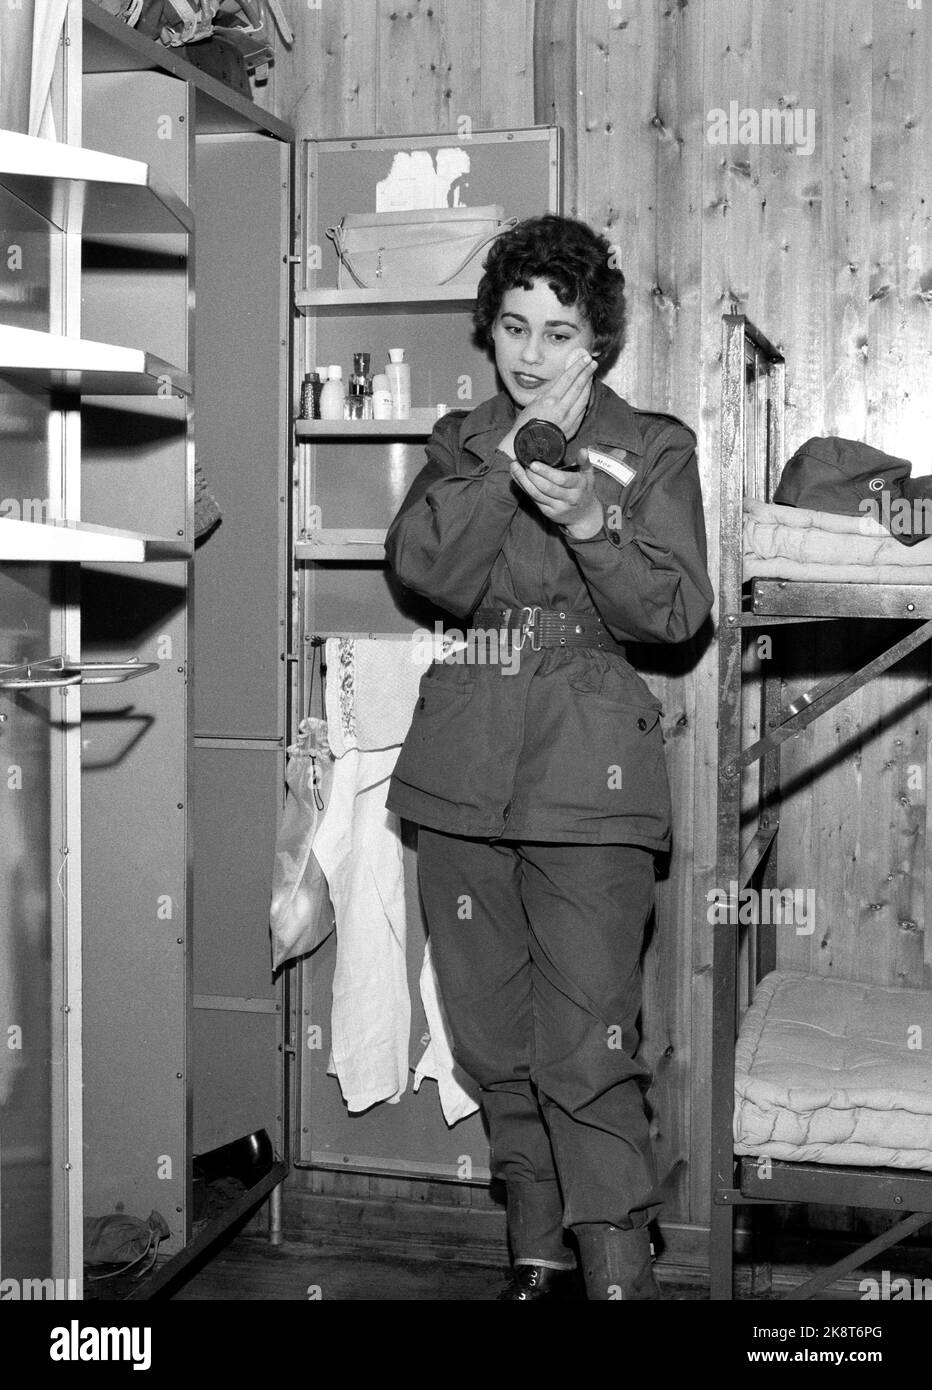 Lahaugmoen à Oslo décembre 1959. Soldats en maquillage : les femmes en uniforme. Le maquillage peut être utilisé, mais il doit être discret. Menig Inger Moe en uniforme à Brakka. Photo: Ivar Aaserud / courant / NTB Banque D'Images